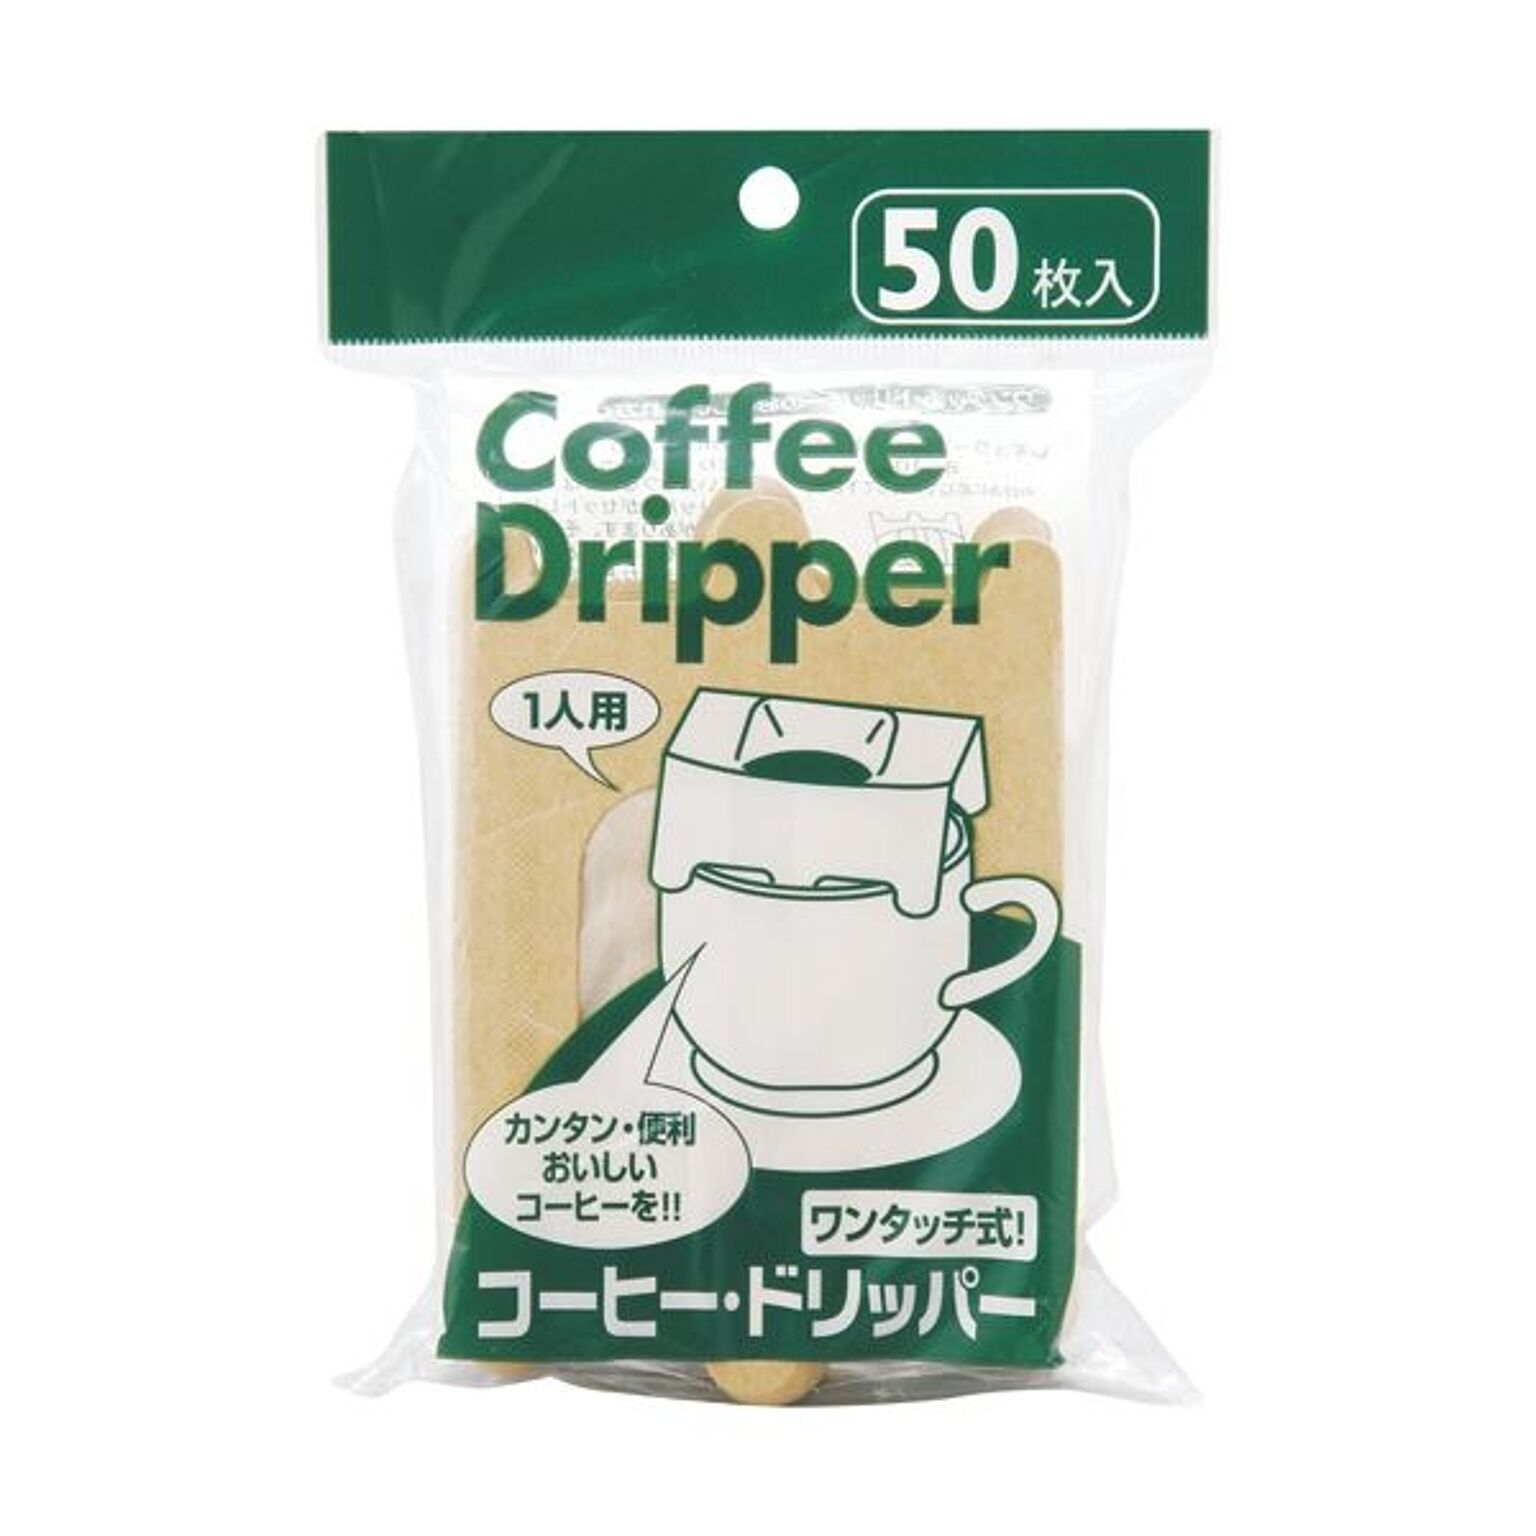 コーヒードリッパー・コーヒーフィルター